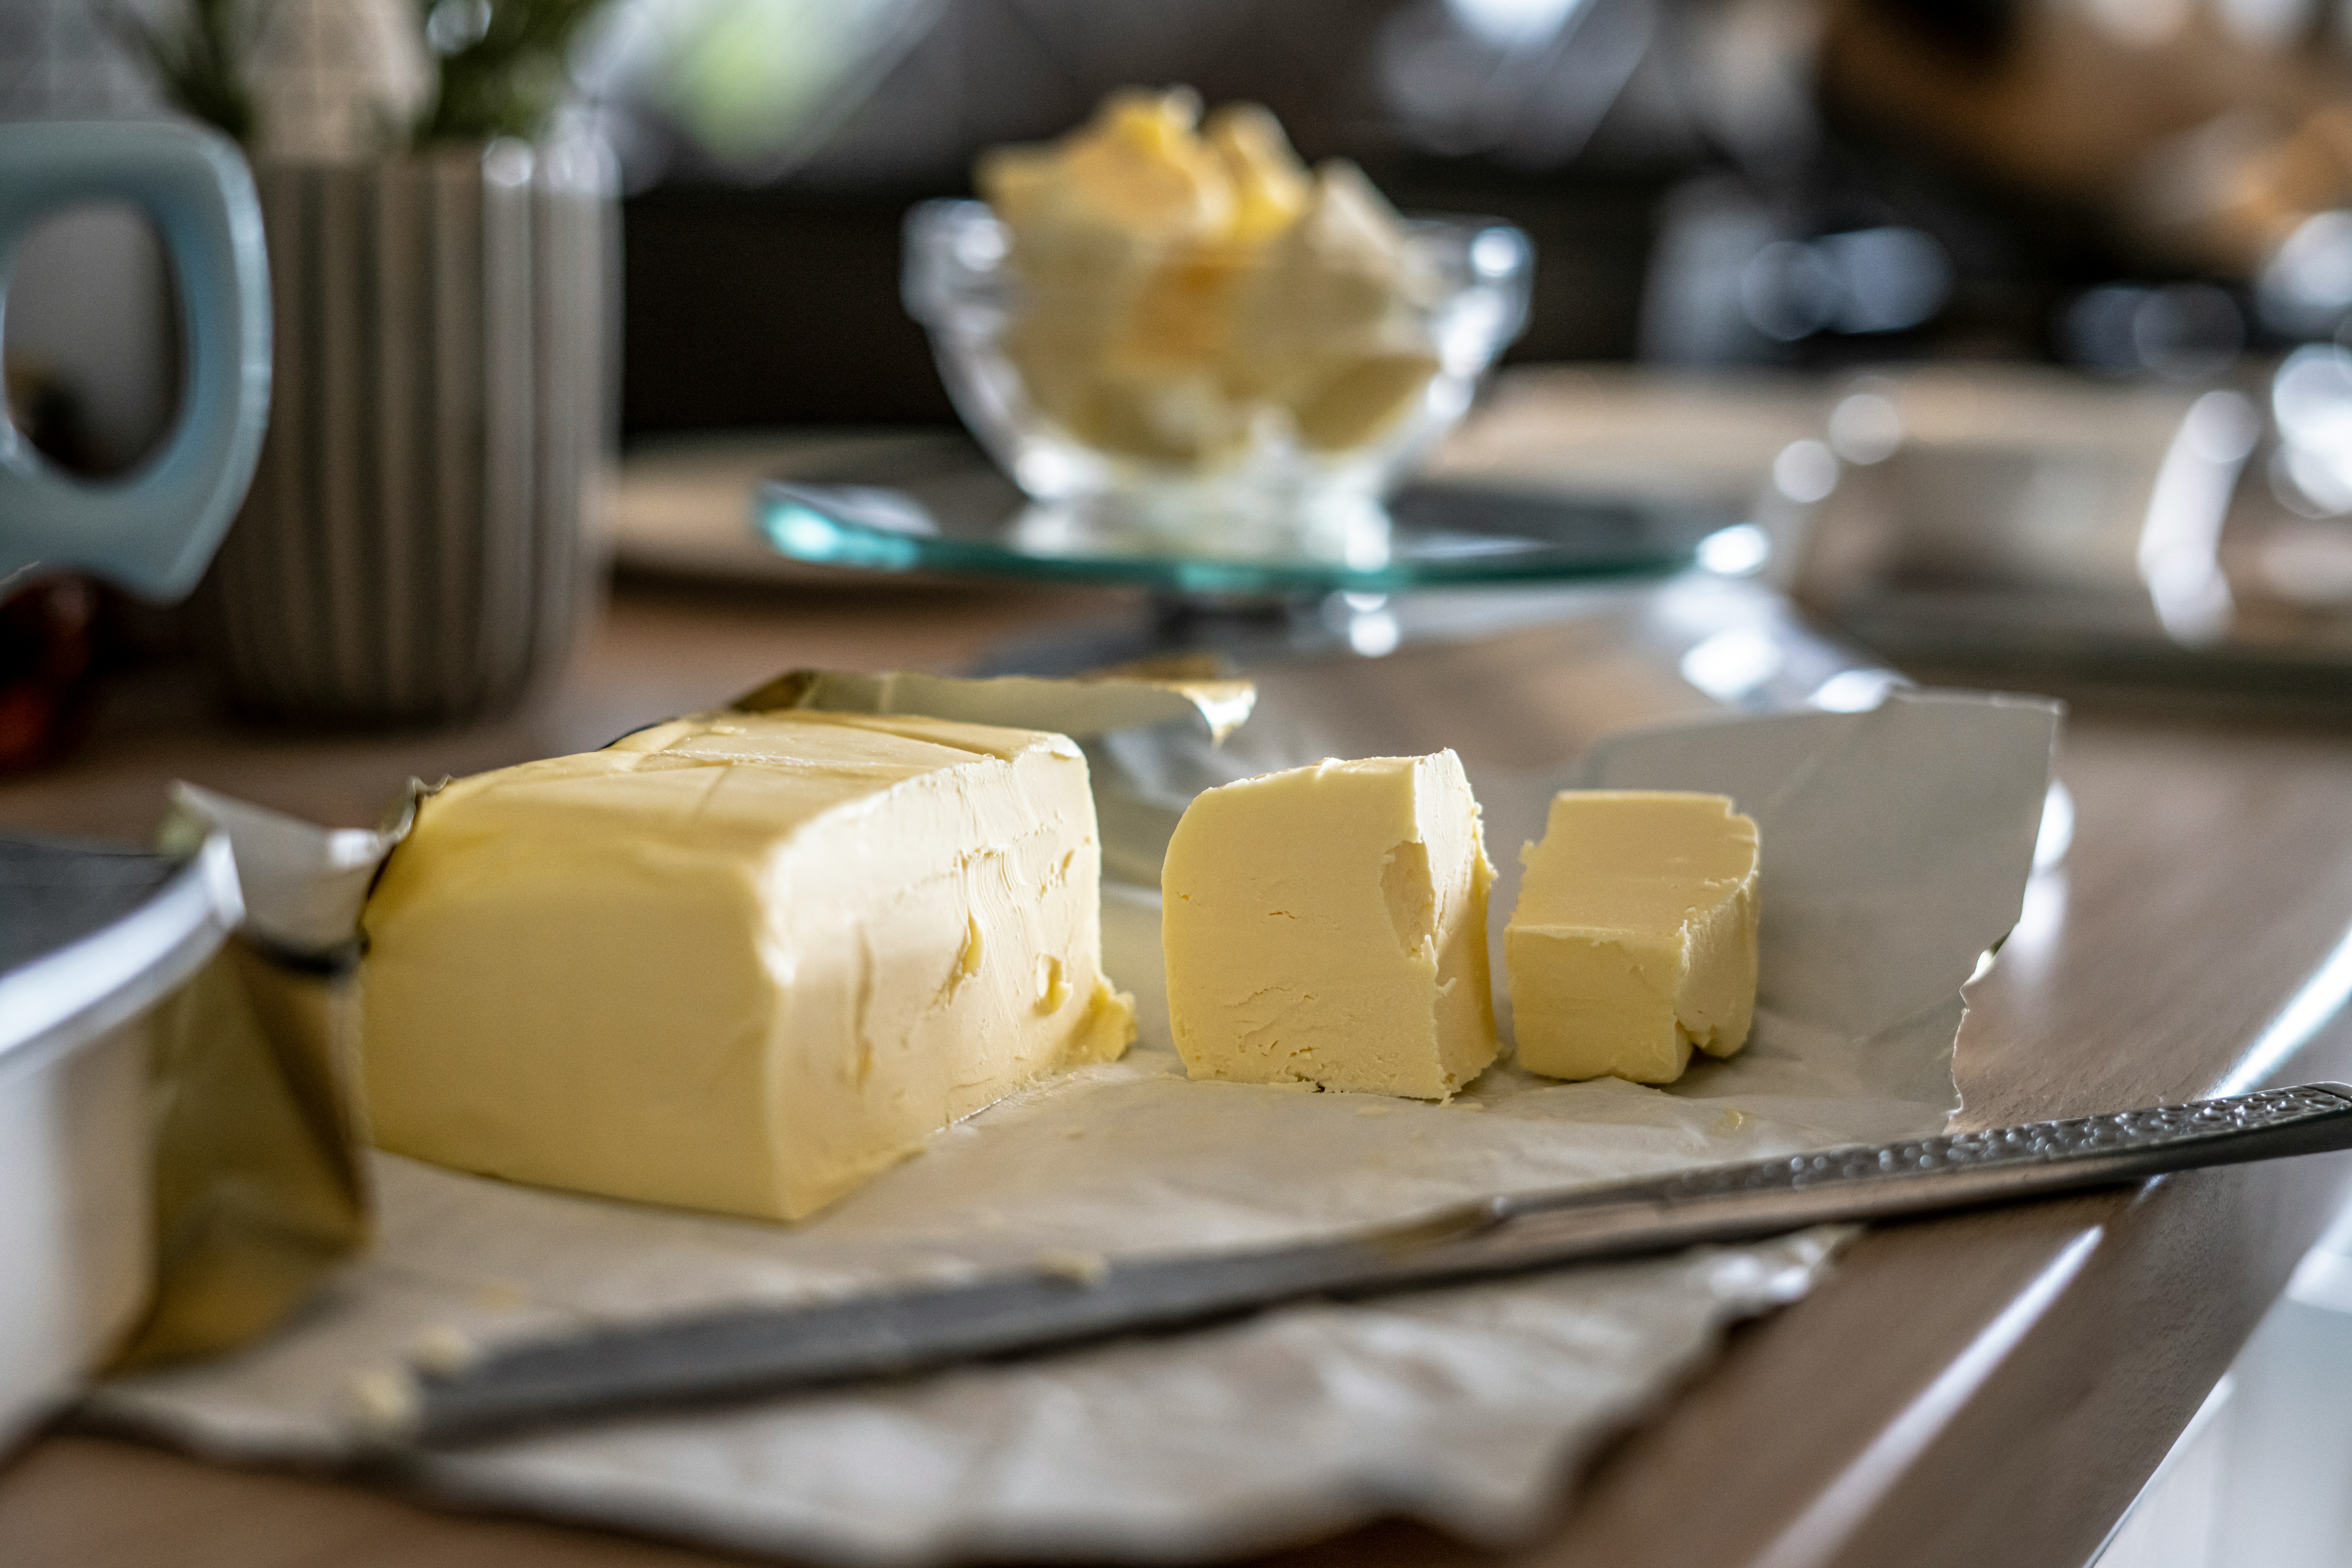 고동색의 네모난 테이블 위에 버터의 껍질을 까서 칼로 3토박 잘라 놓은 것과 뒤로는 투명한 유리 그릇에 버터를 잘게 잘라서 가득 담아 놓은 것을 두고 찍은 사진